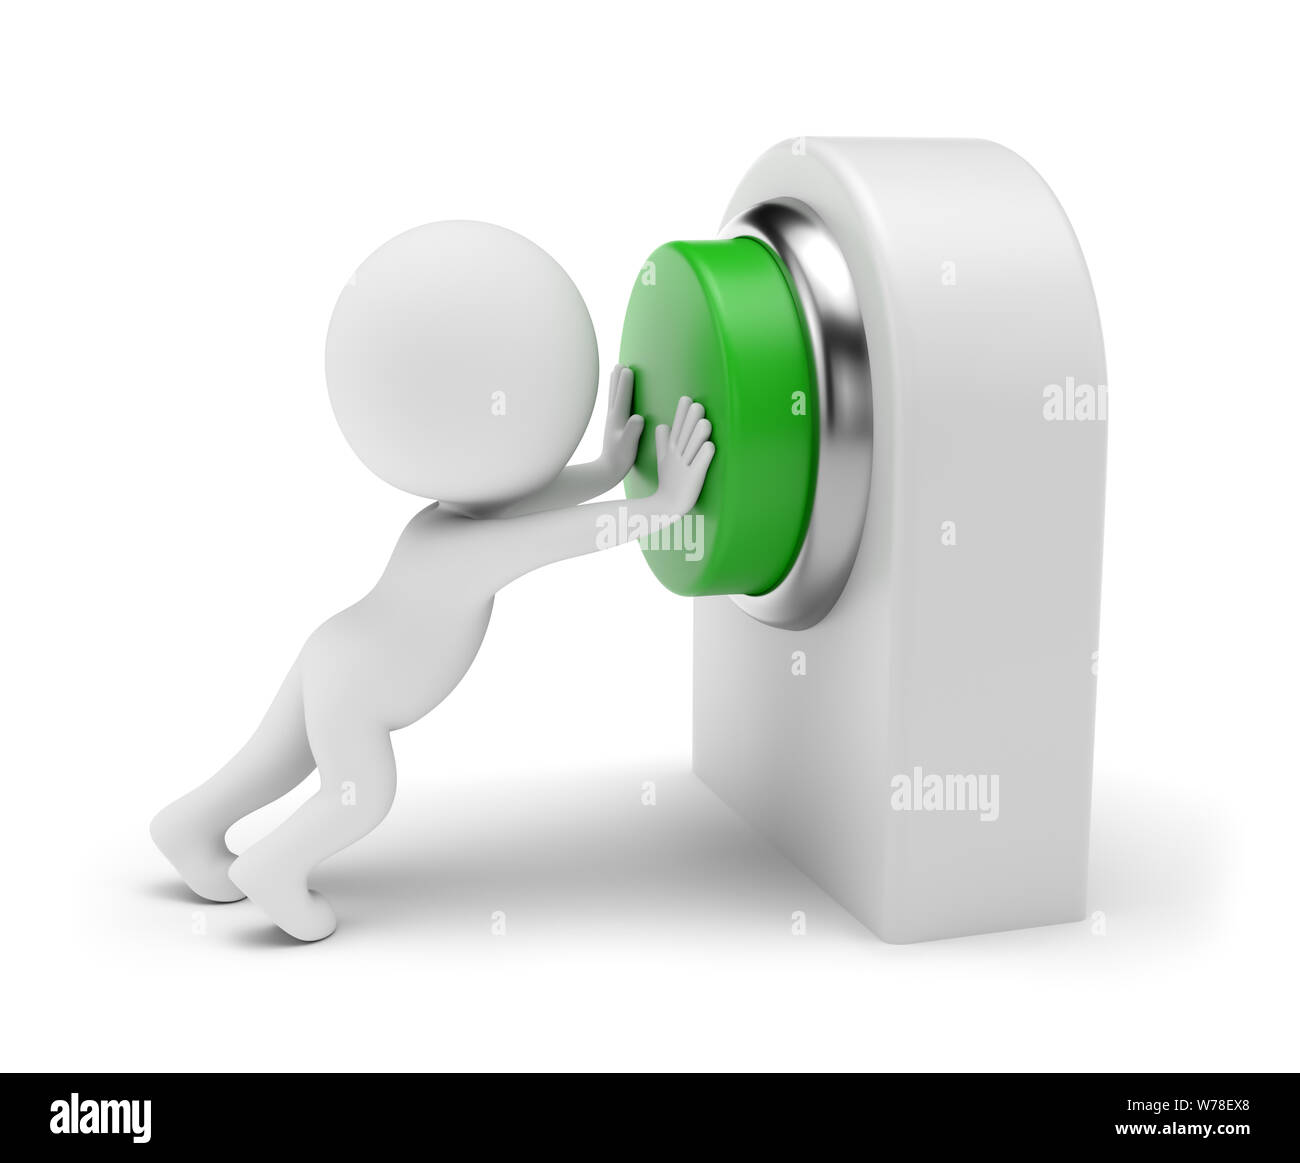 Gente pequeña 3d - pulsando el botón verde en la tarjeta de control. 3D rendering. Aislado sobre fondo blanco. Foto de stock